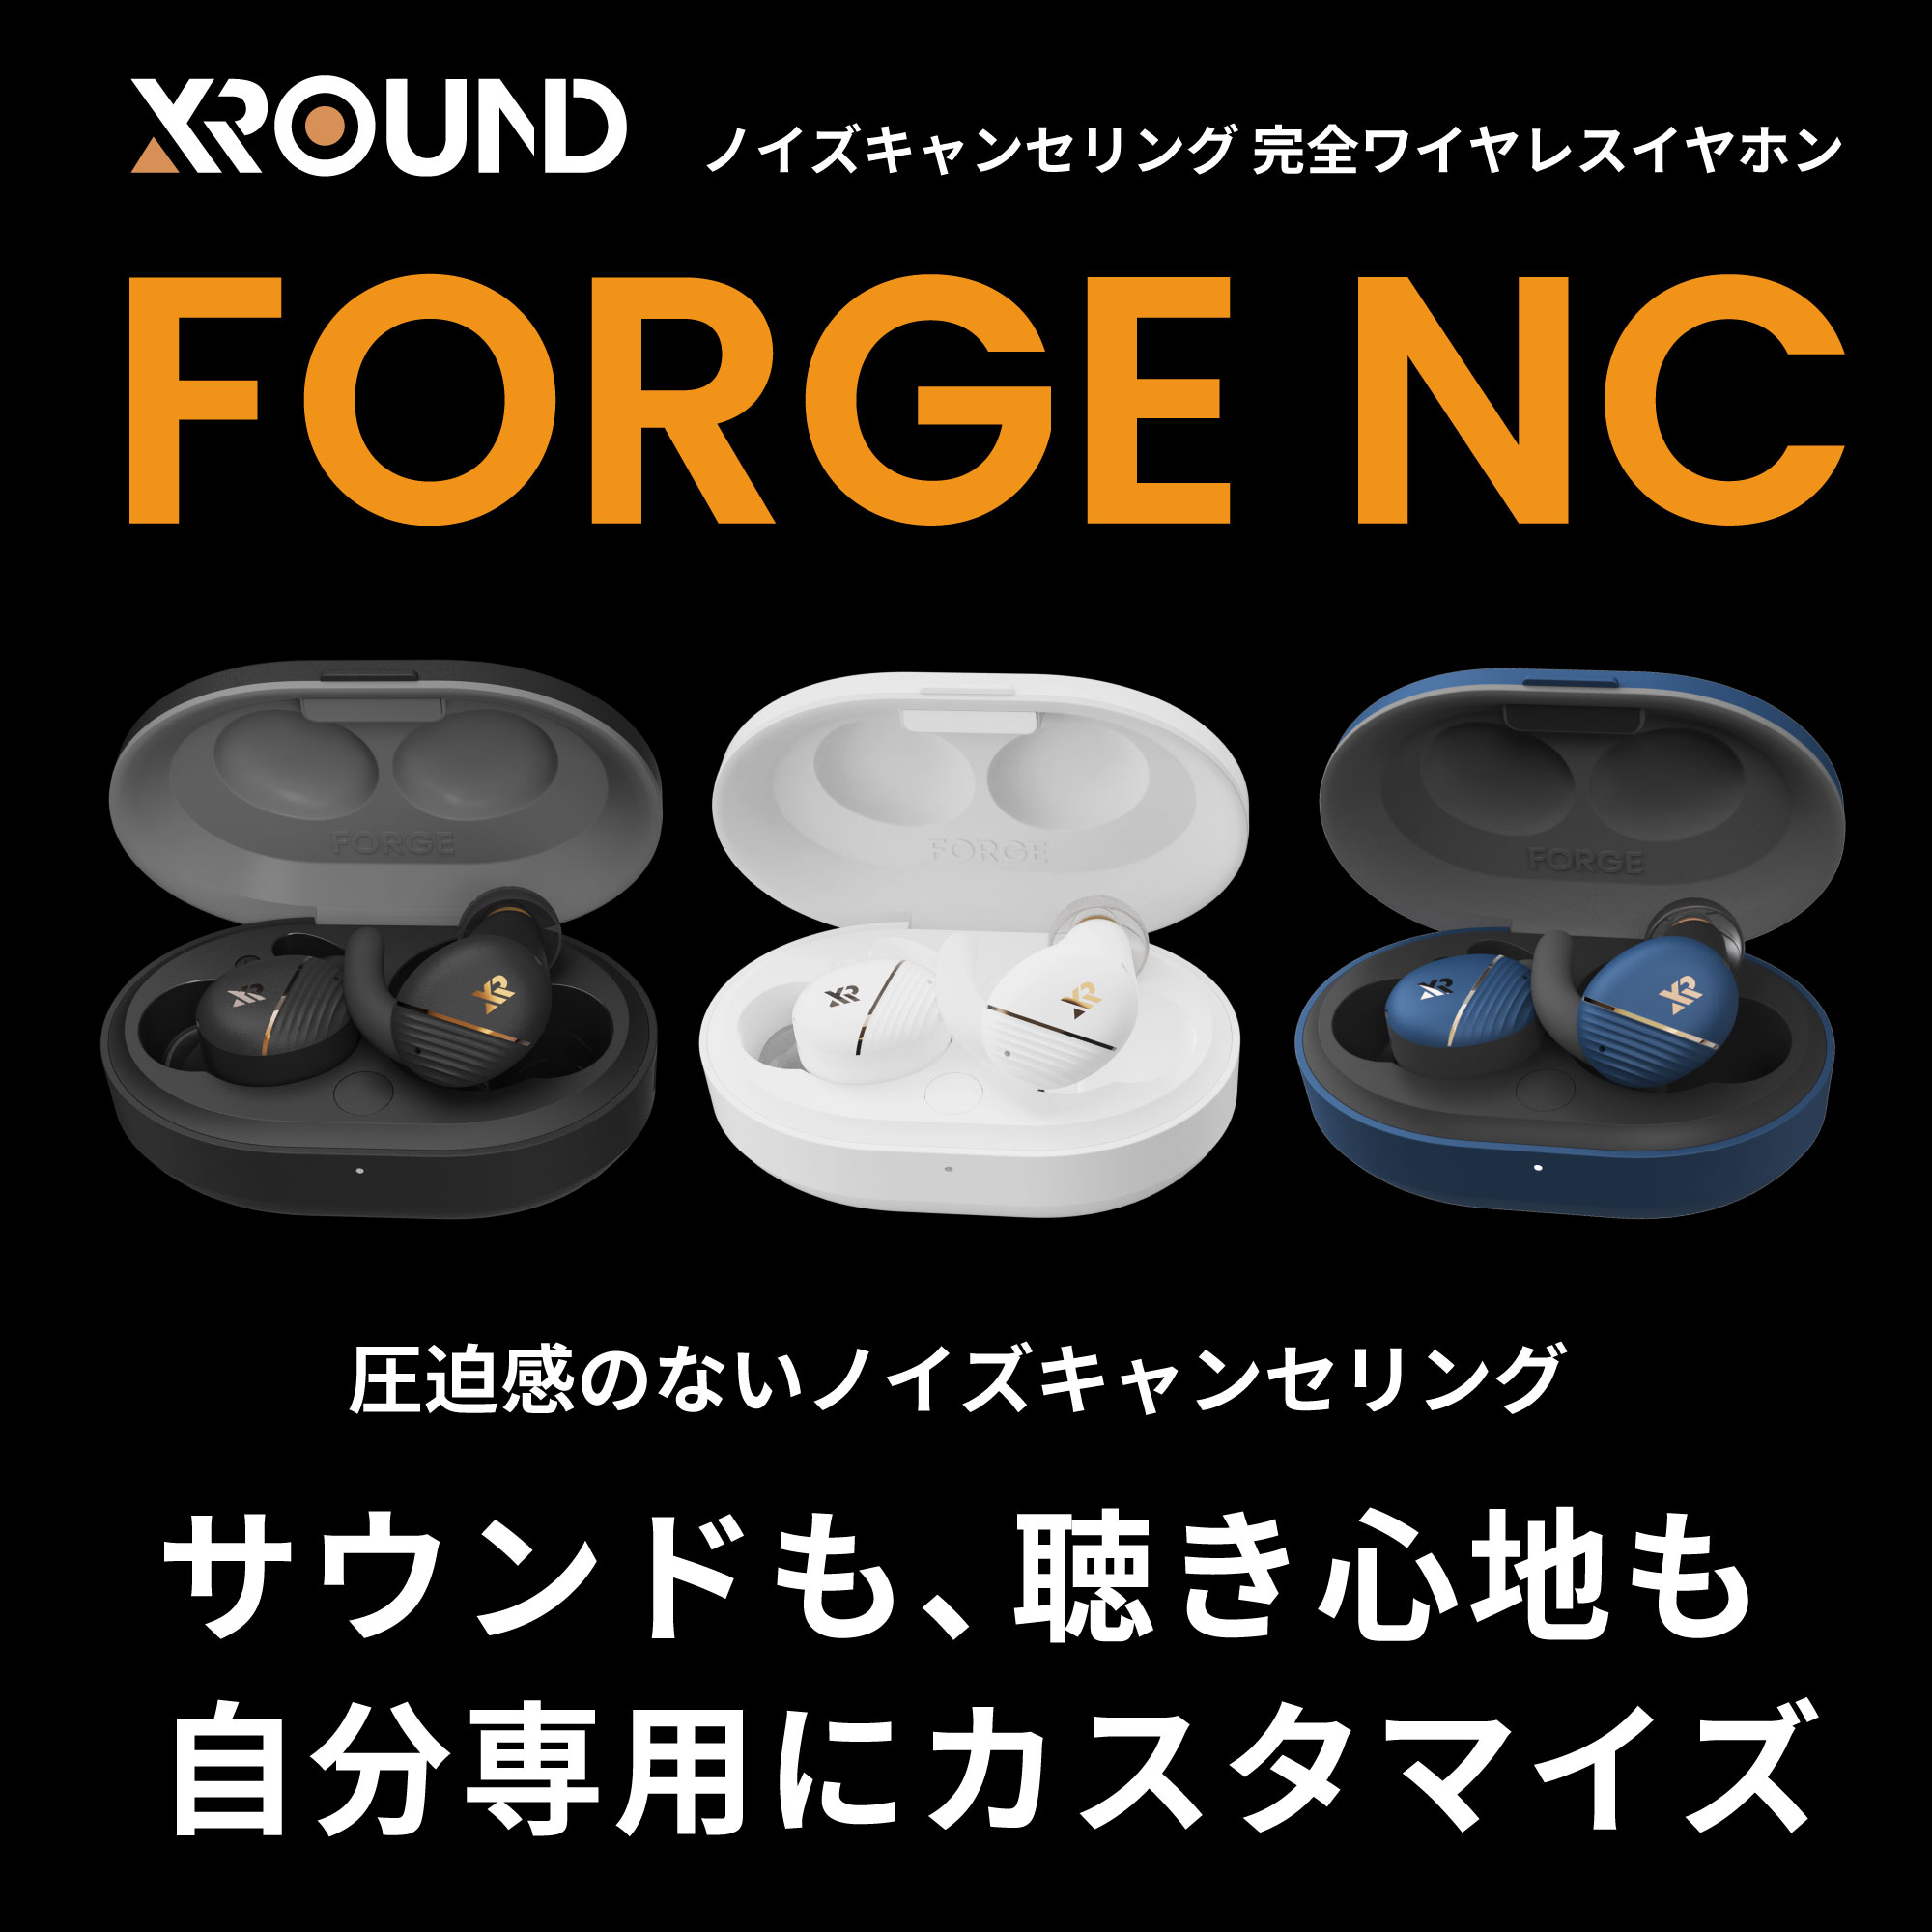 FORGE NC - 完全ワイヤレスイヤホン- 株式会社アーキサイト